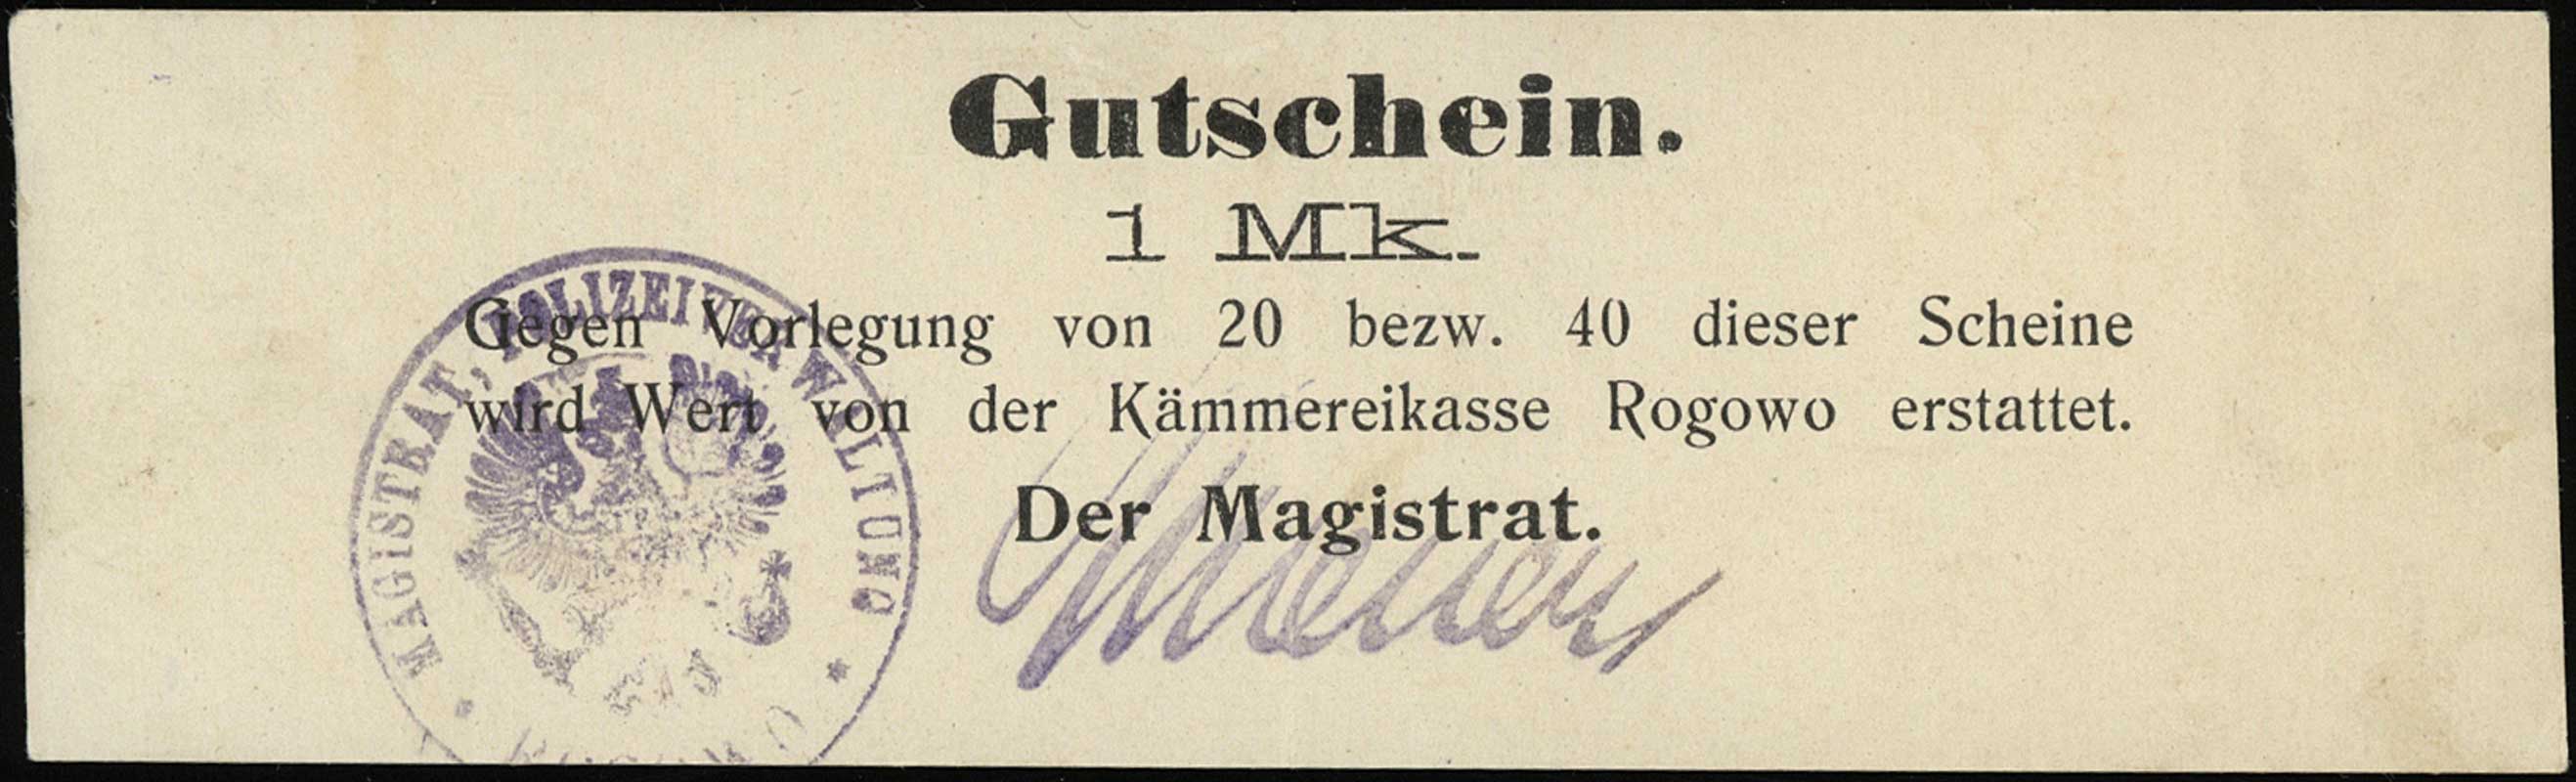 Rogowo, 1 marka (1914), podpis faksymilowy wykonany stemplem, Podczaski P-174.2.a, Jabł. 3355, rzadka